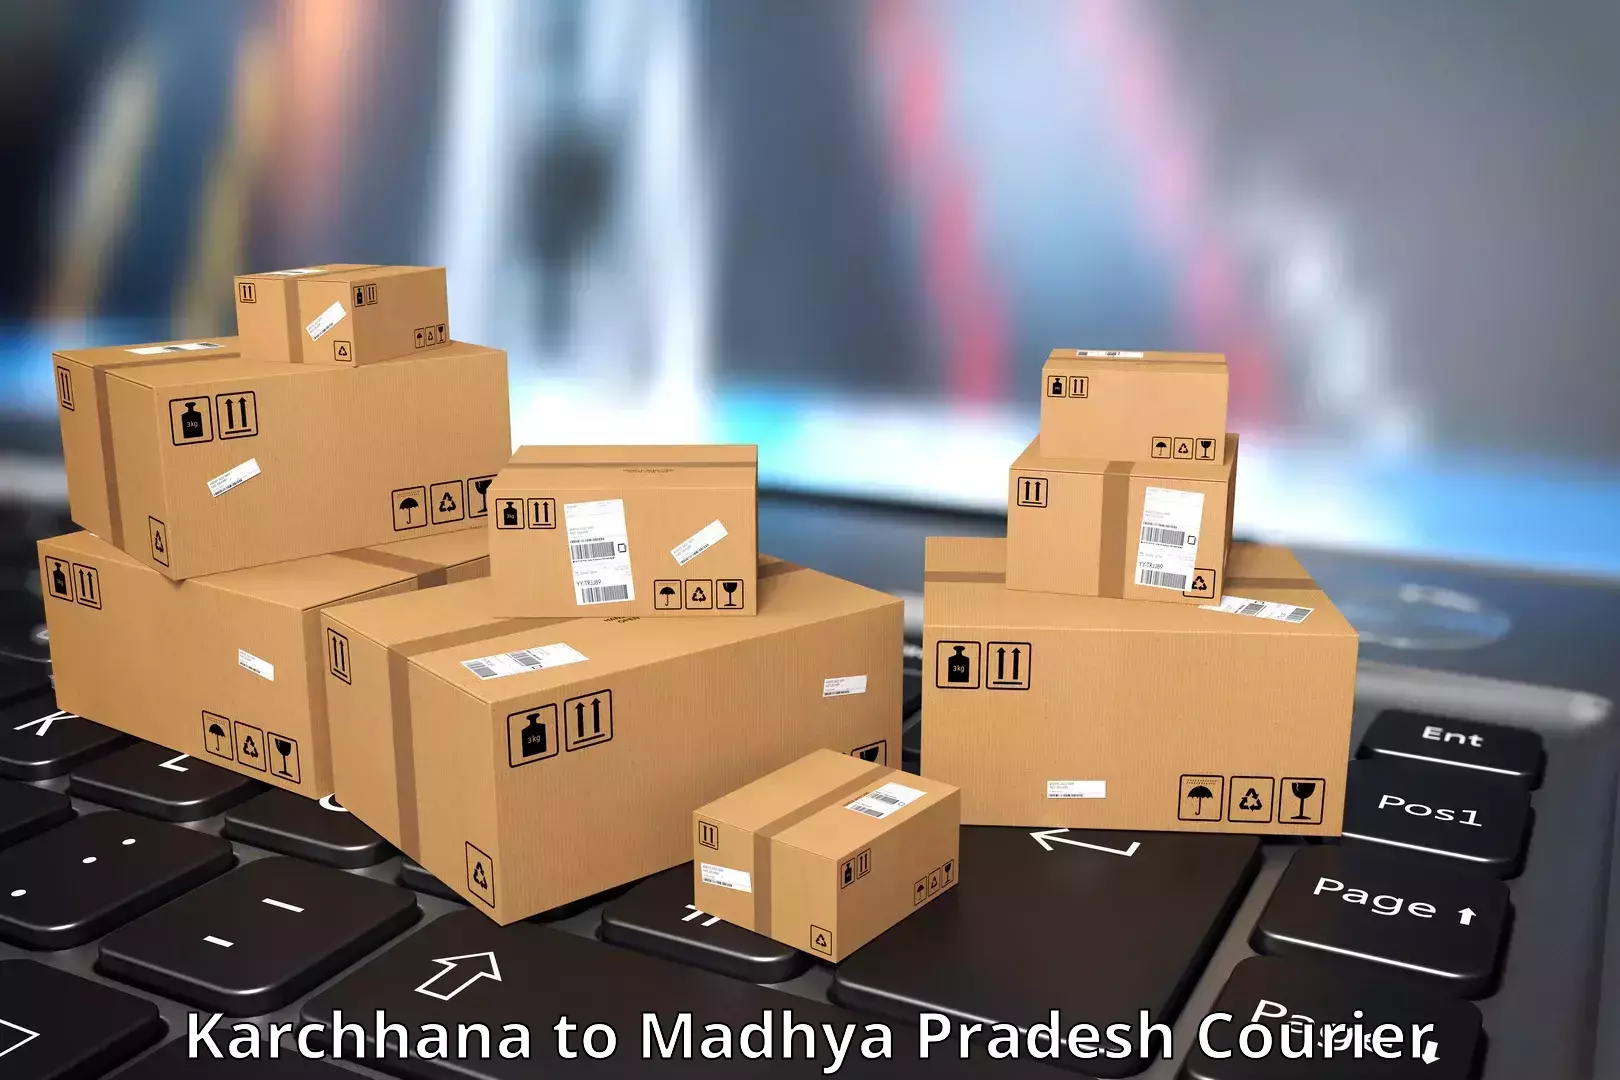 Advanced shipping technology in Karchhana to Khirkiya